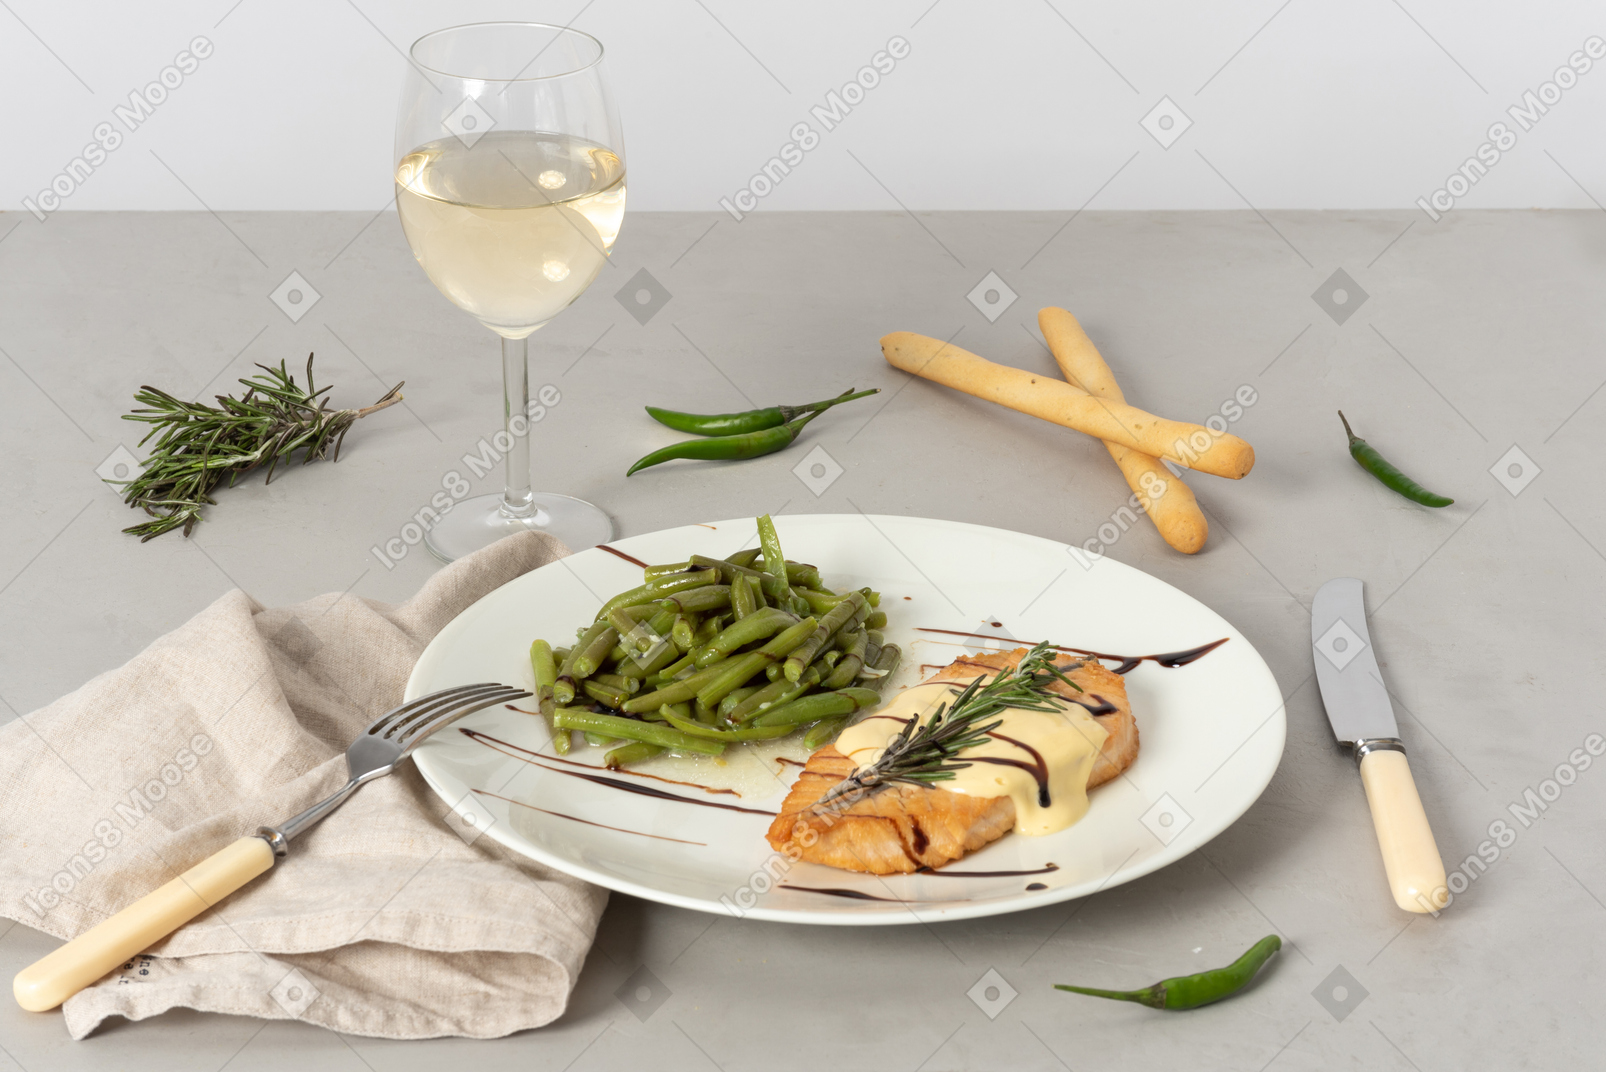 Plato de pescado y judías verdes, copa de vino blanco, grissini, tenedor y cuchillo